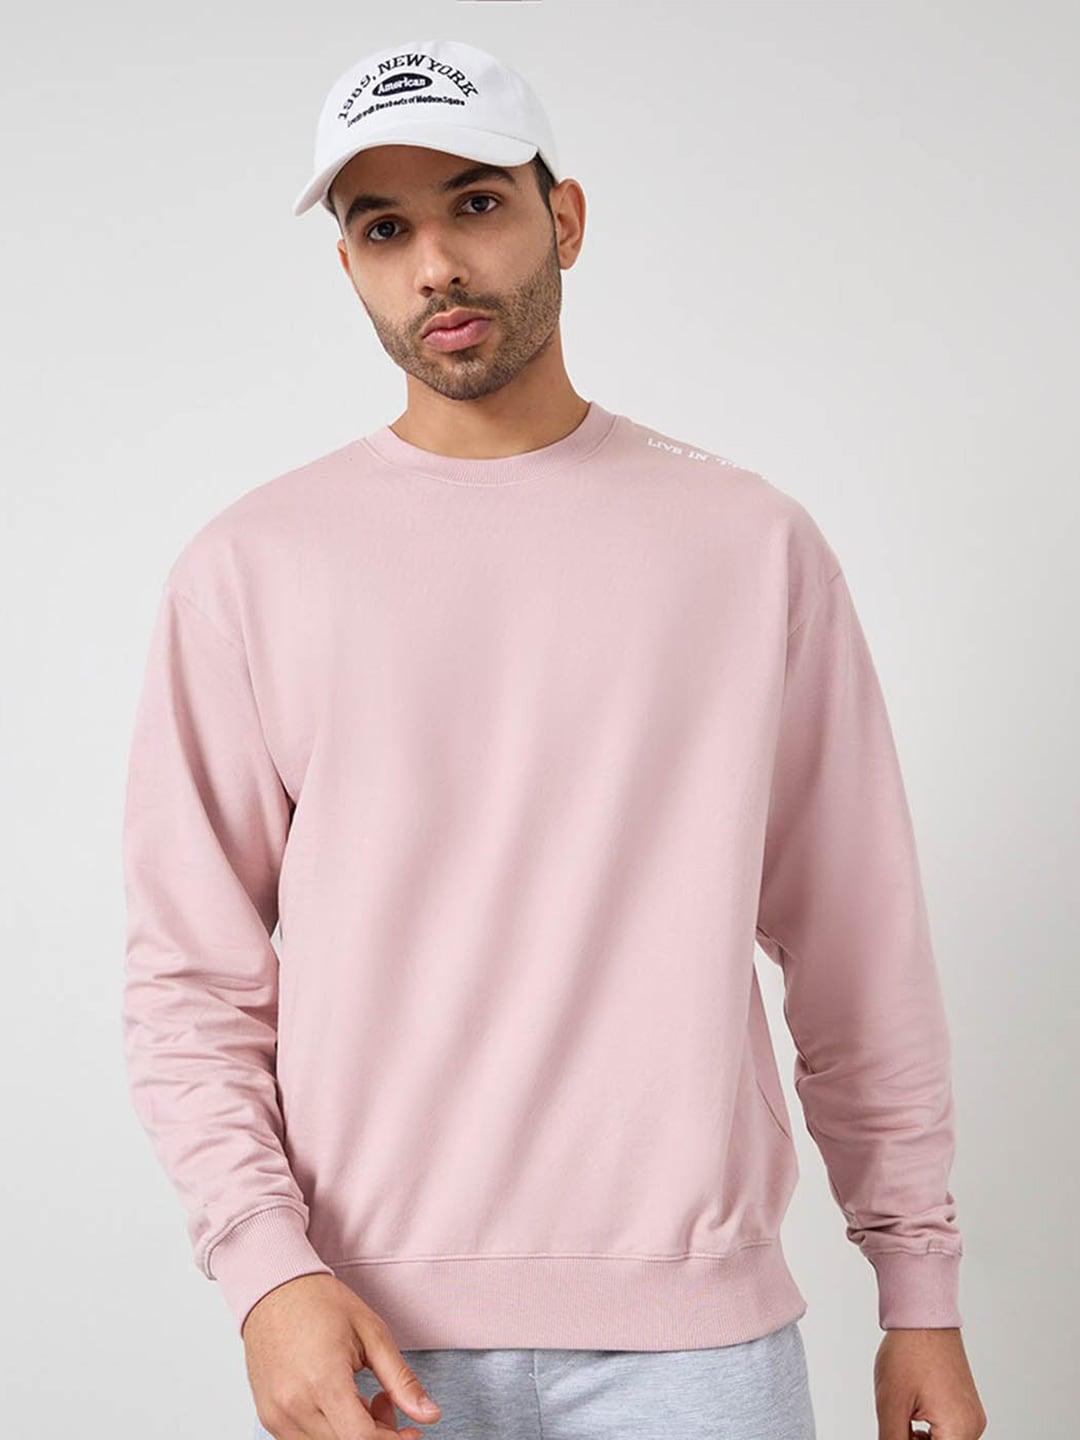 styli round neck pure cotton pullover sweatshirt